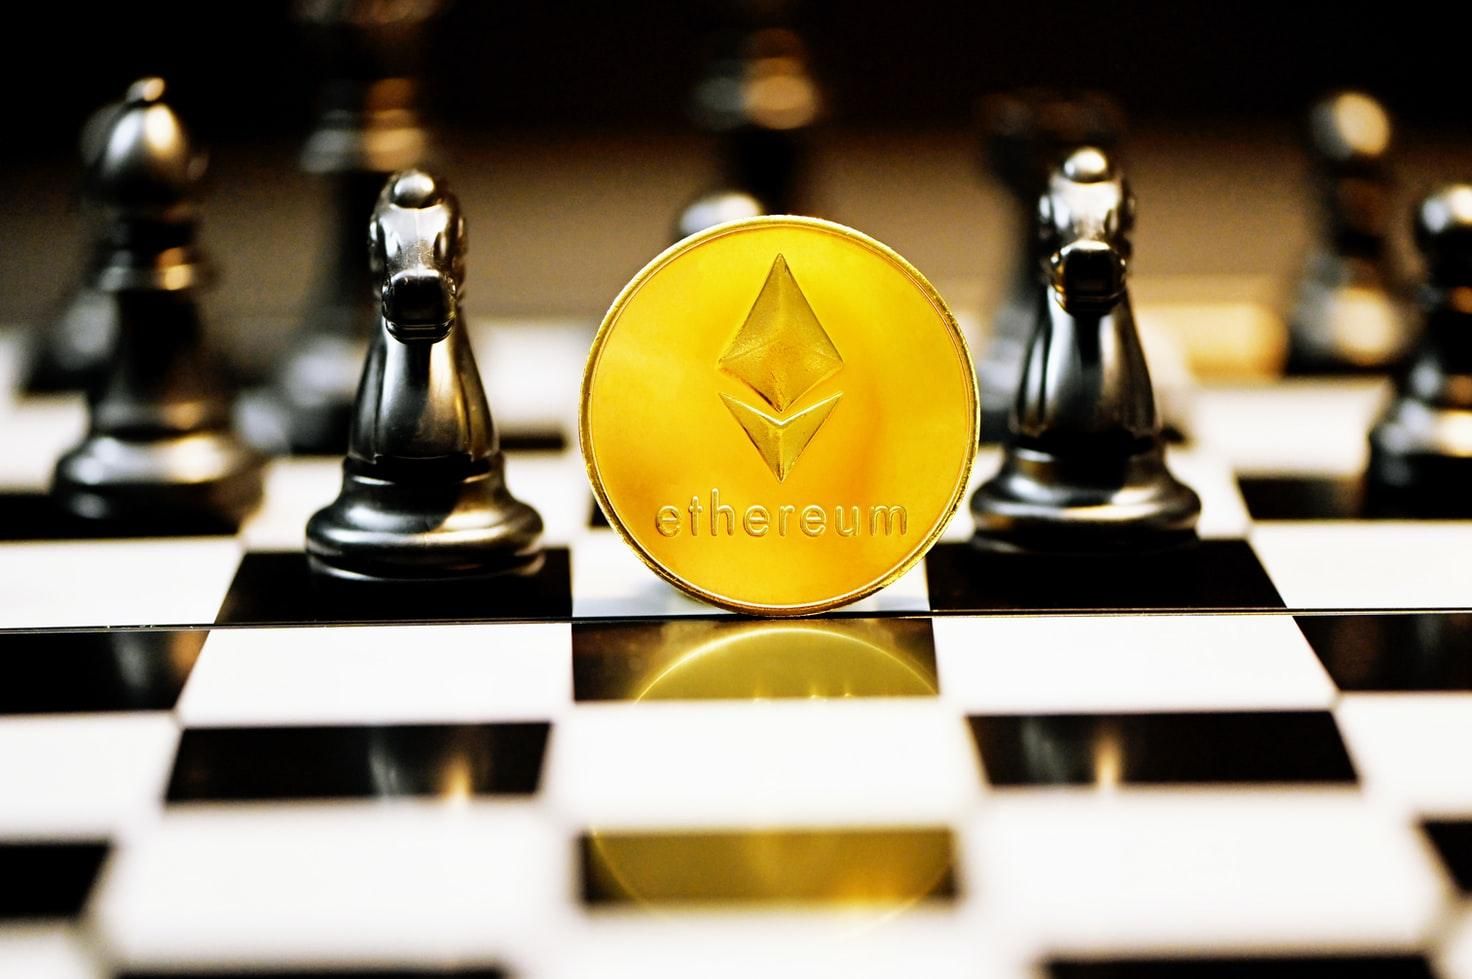 Расцвет Ethereum: как вторая по популярности криптовалюта мира может потеснить биткоин - новости биткоин - Финансы